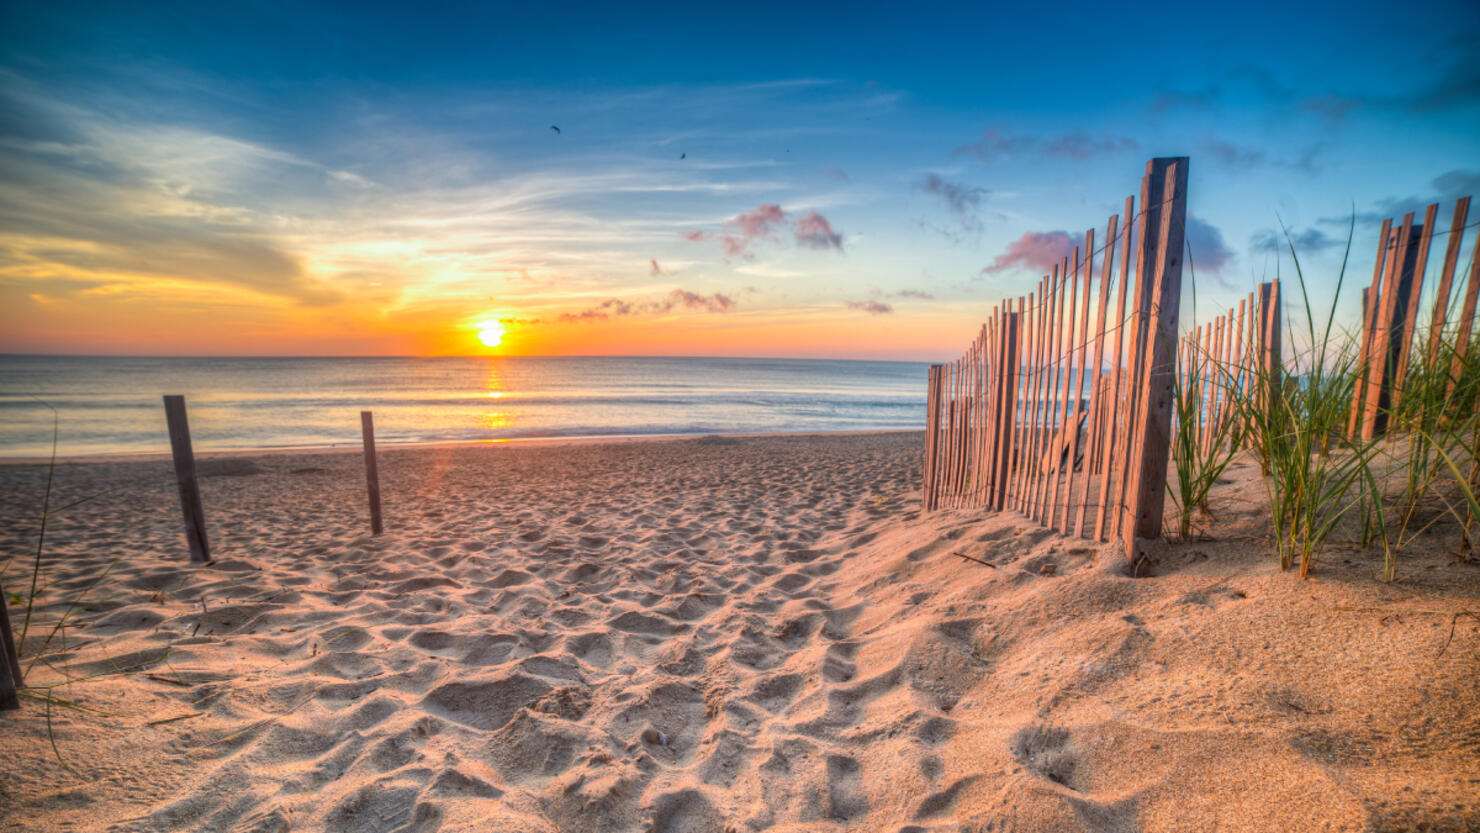 15 Best Weekend Beach Getaways in the US